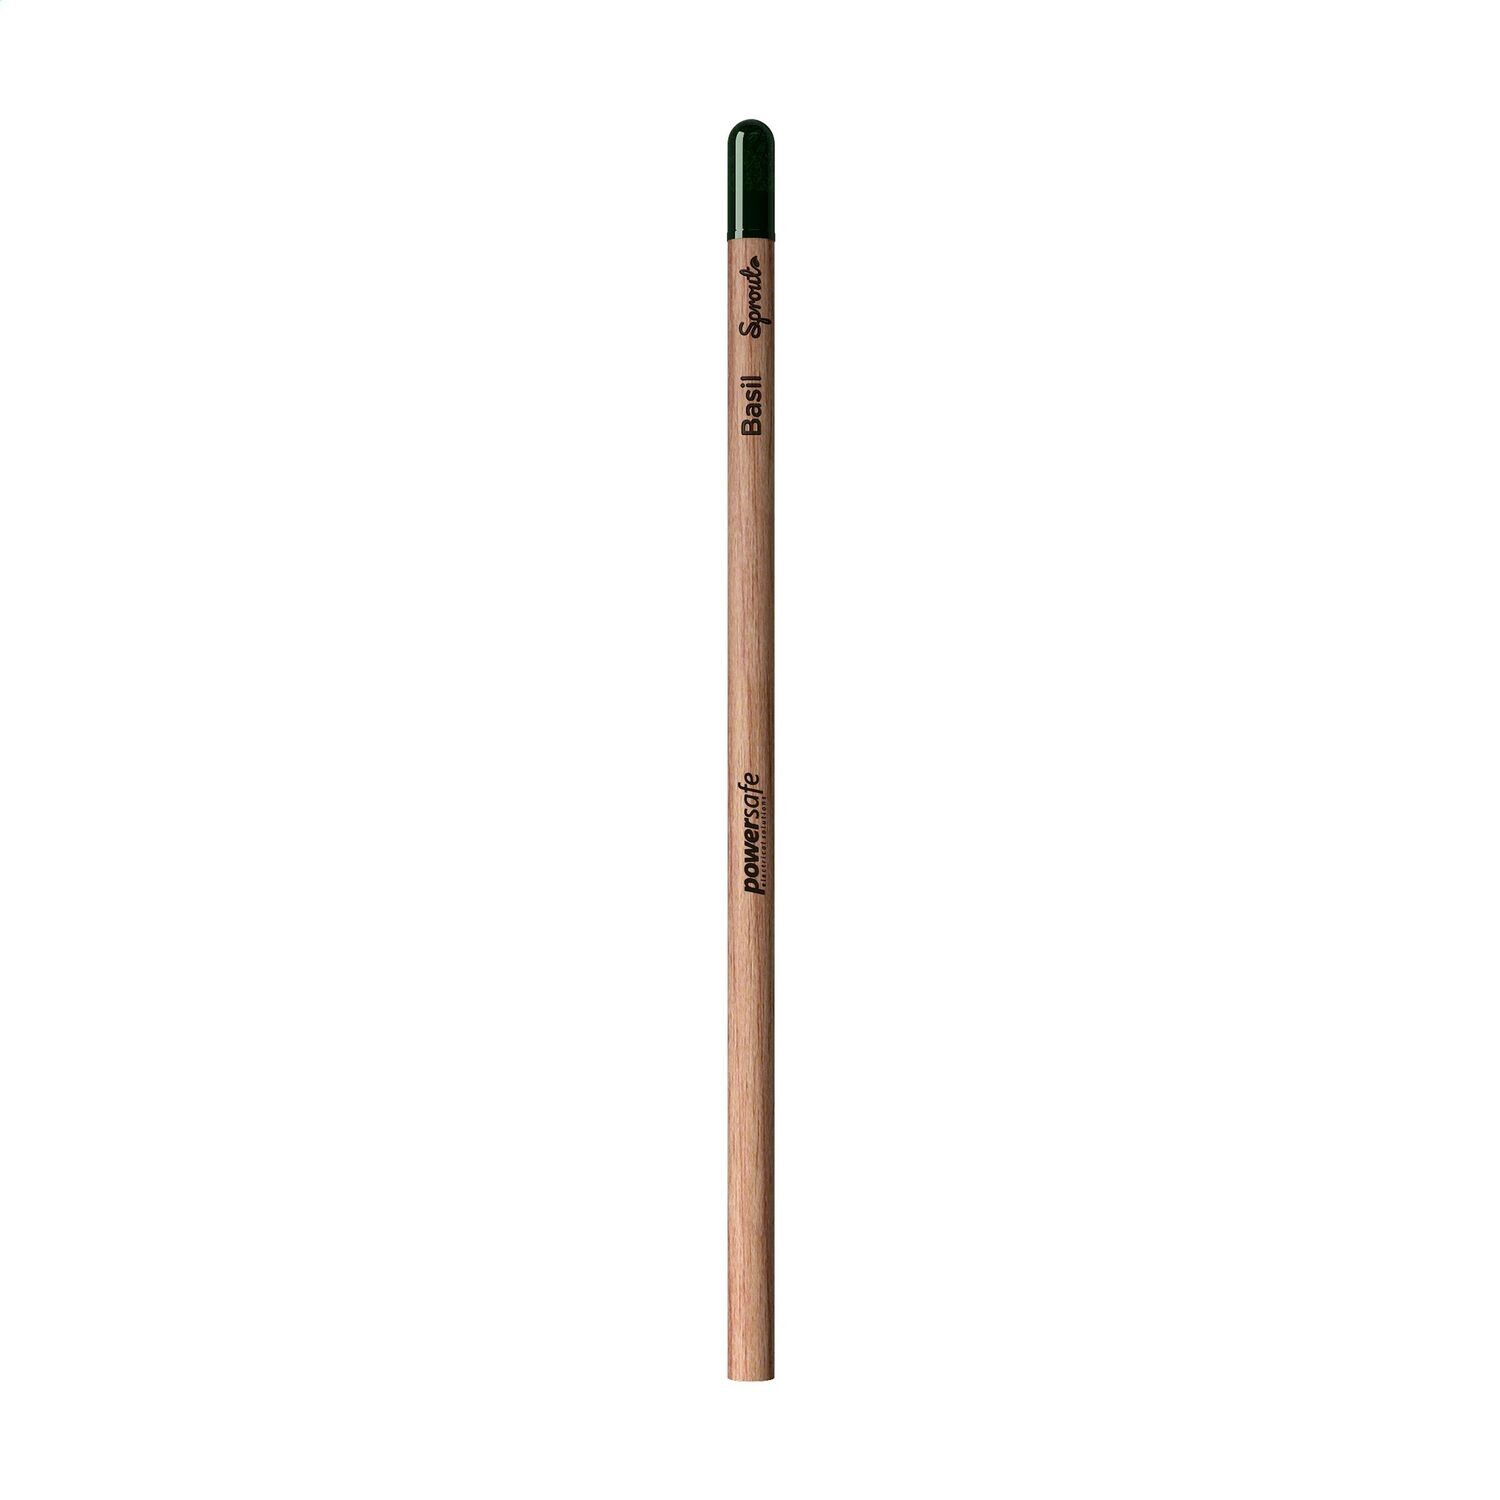 Sproutworld Unsharpened Pencil uspisset blyant